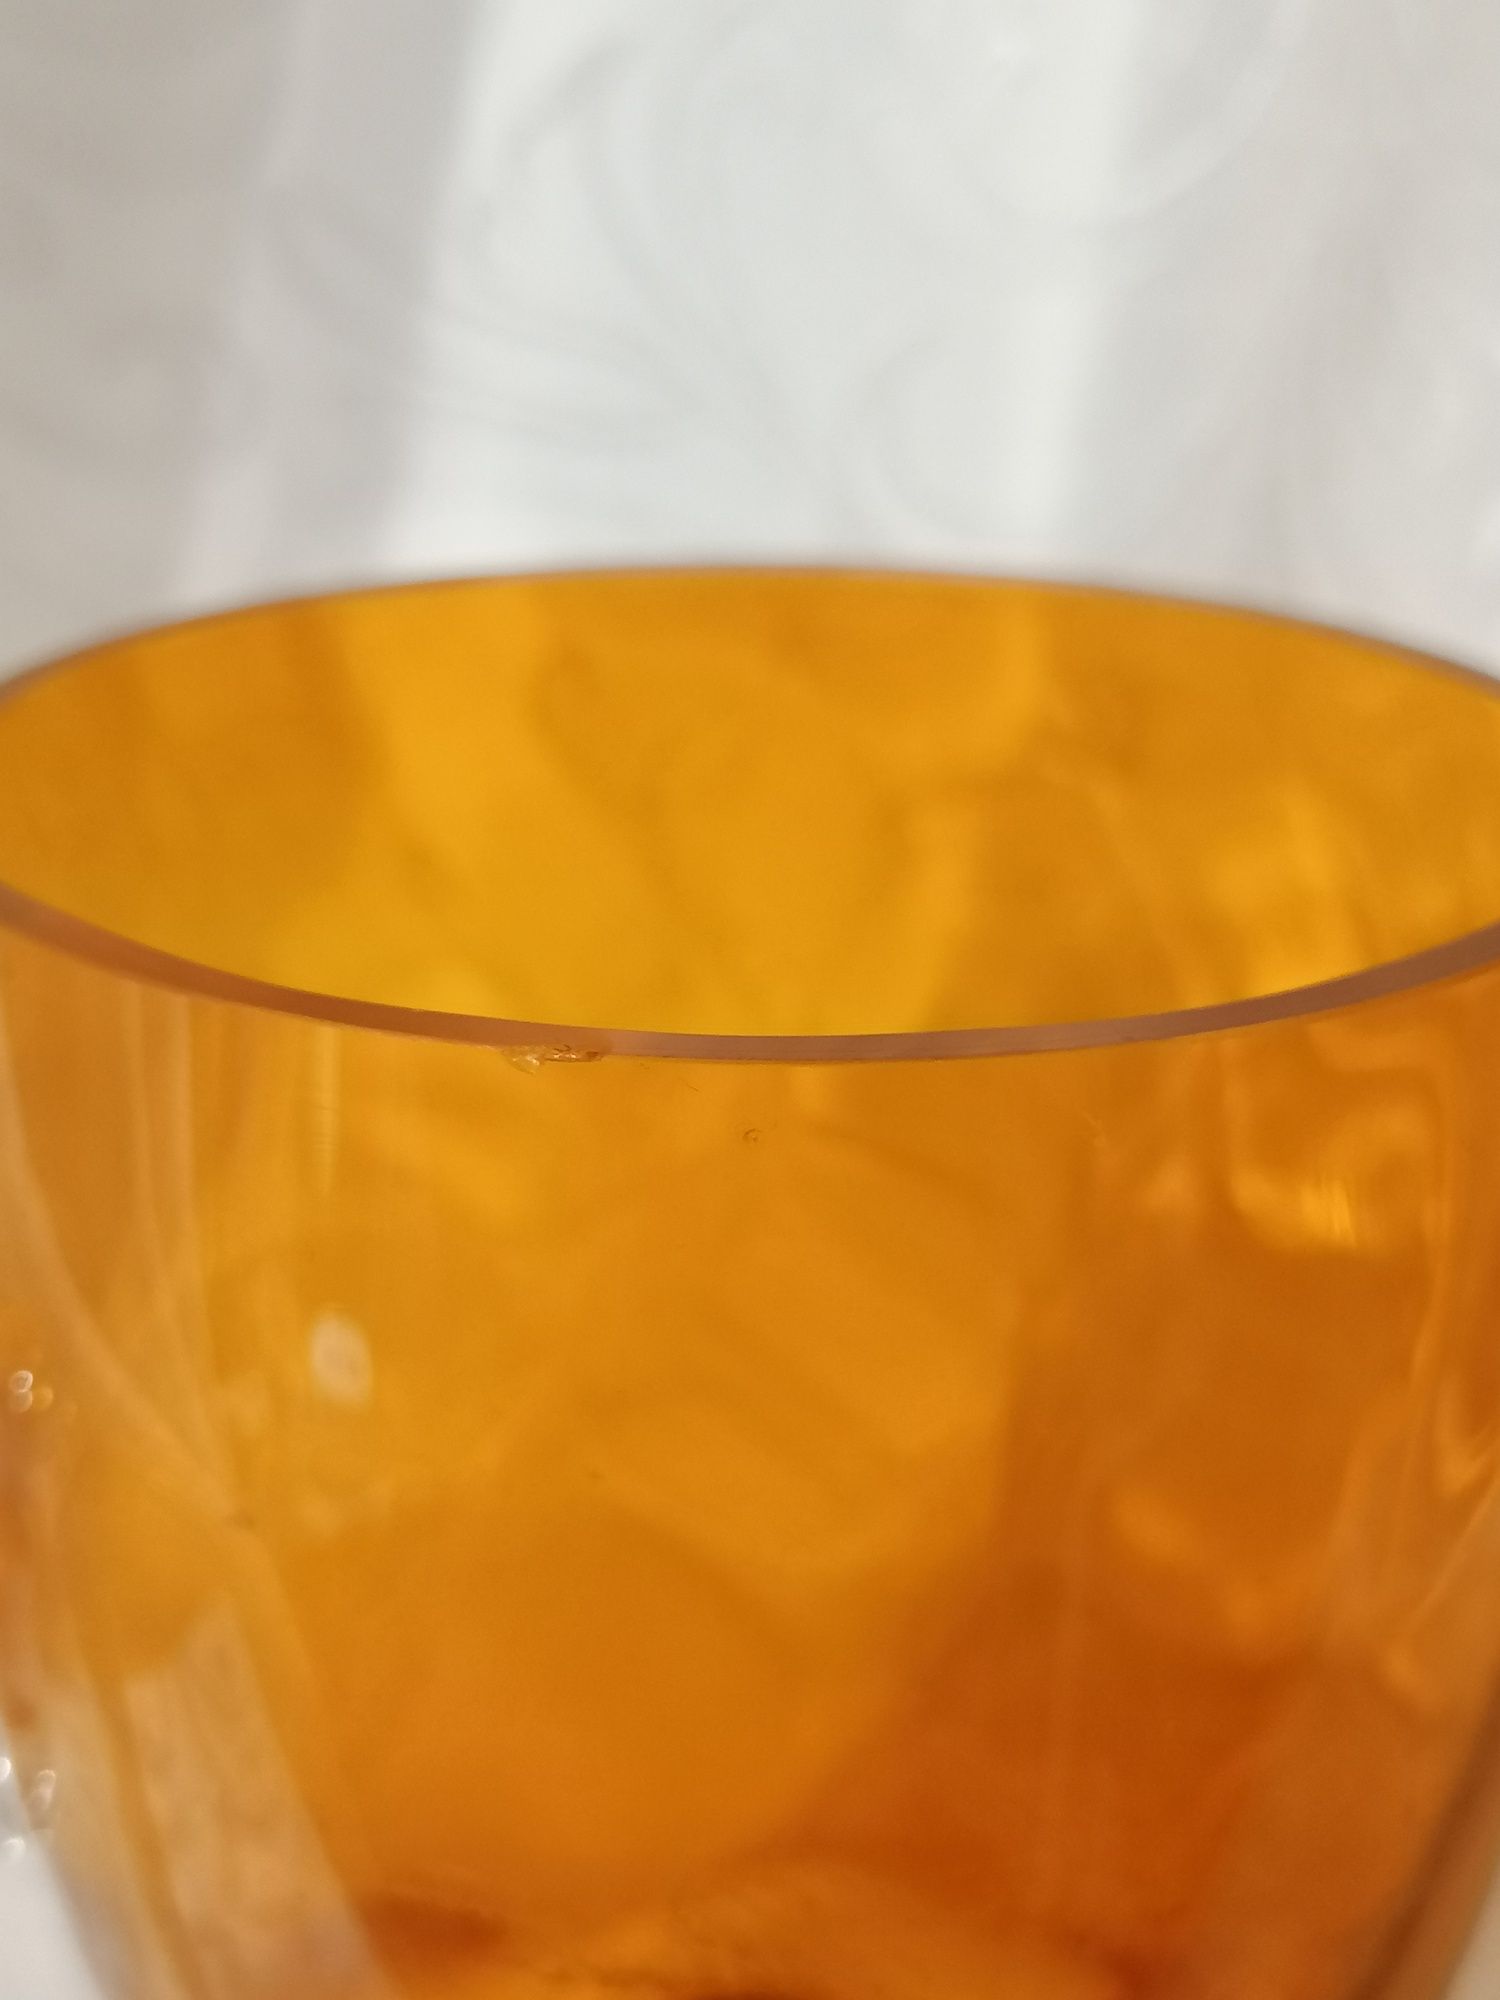 Ładny szklany pomarańczowy kufel polecam